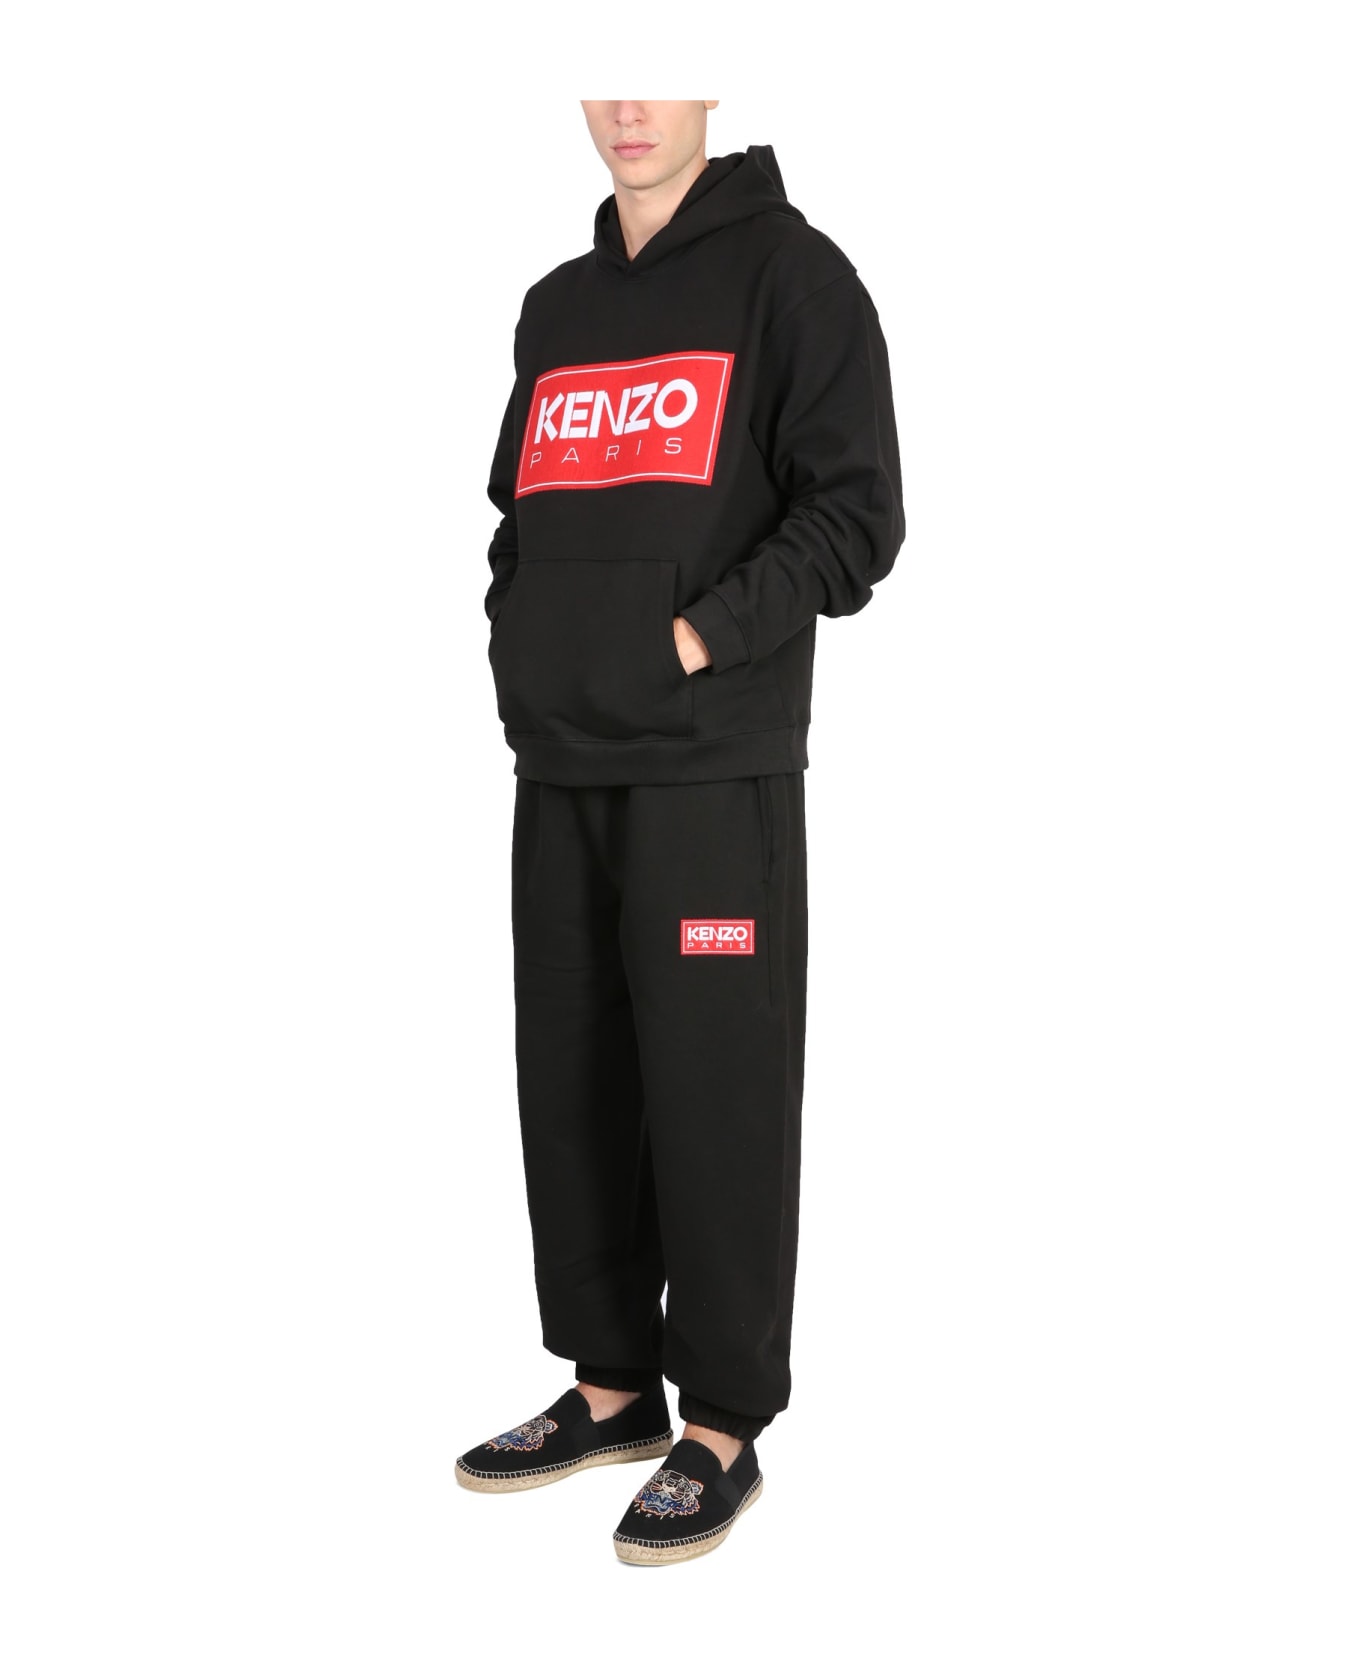 Kenzo Sweatshirt With Logo - NERO